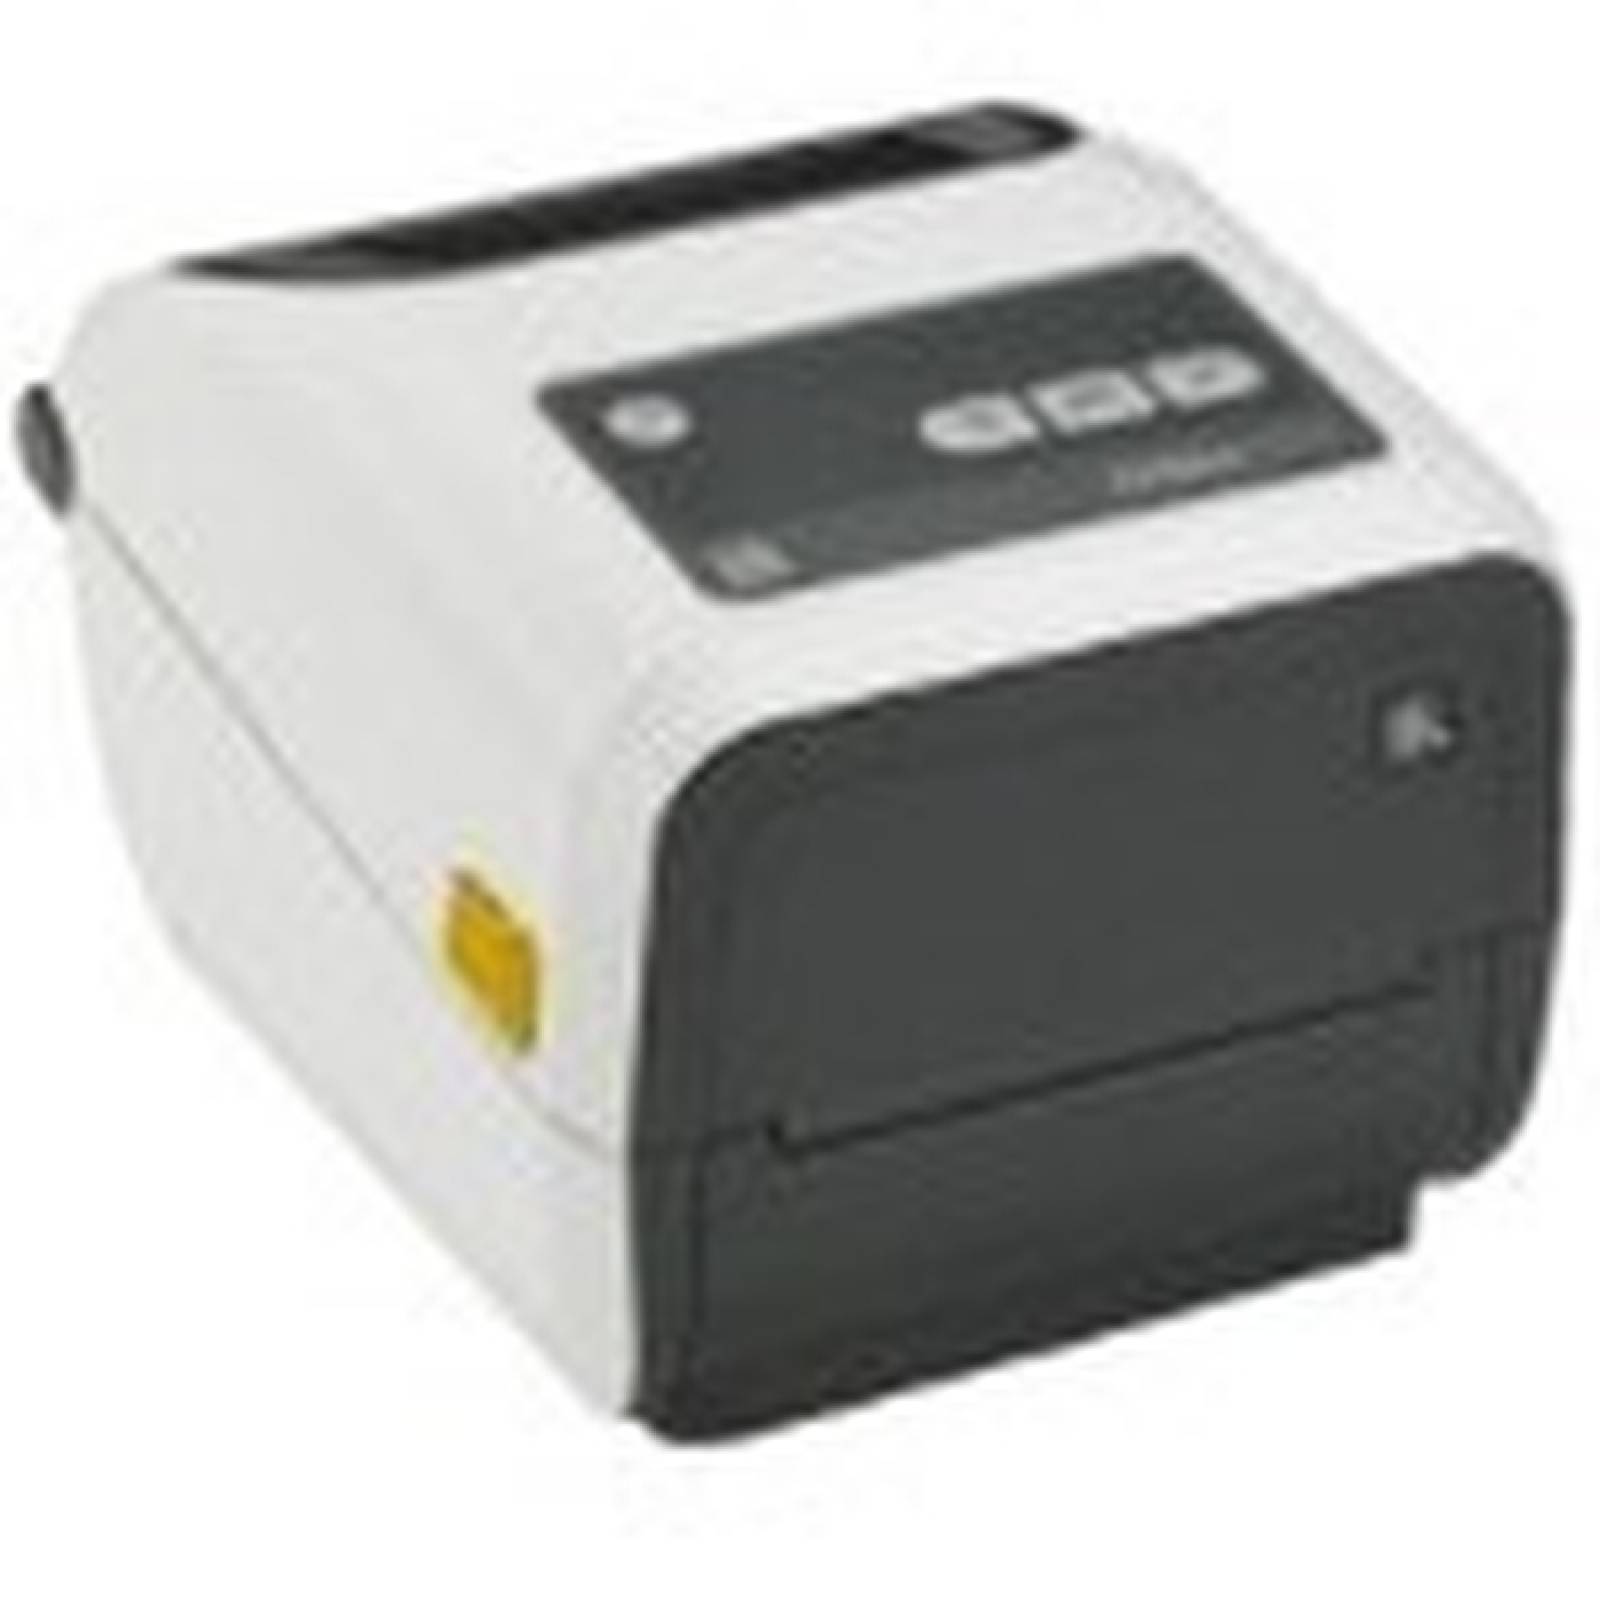 Impresora trmica directa Zebra ZD420dHC  Monocromo  Escritorio  Impresin de etiquetas